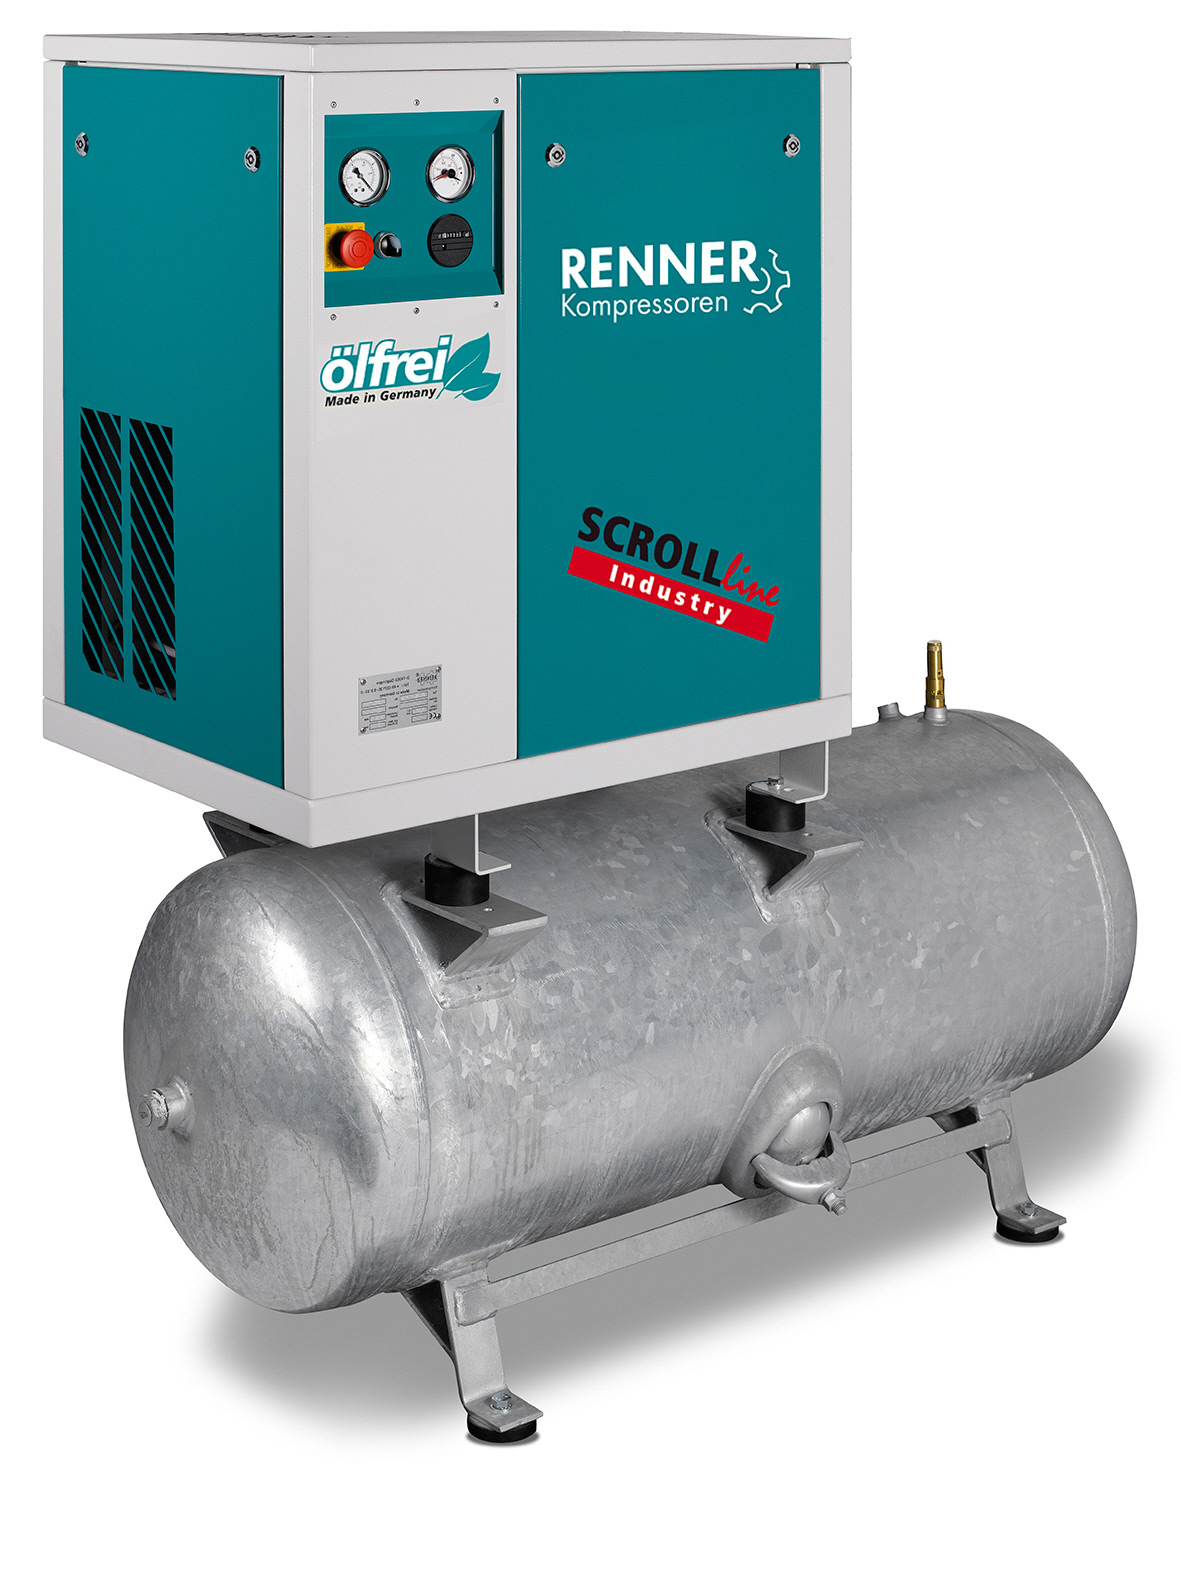 RENNER SCROLL-Kompressor SLD-S 7,5 / 10 bar/ 755 l/min / 2x90 l  Behälter Stationäre ölfreie Kompressoren